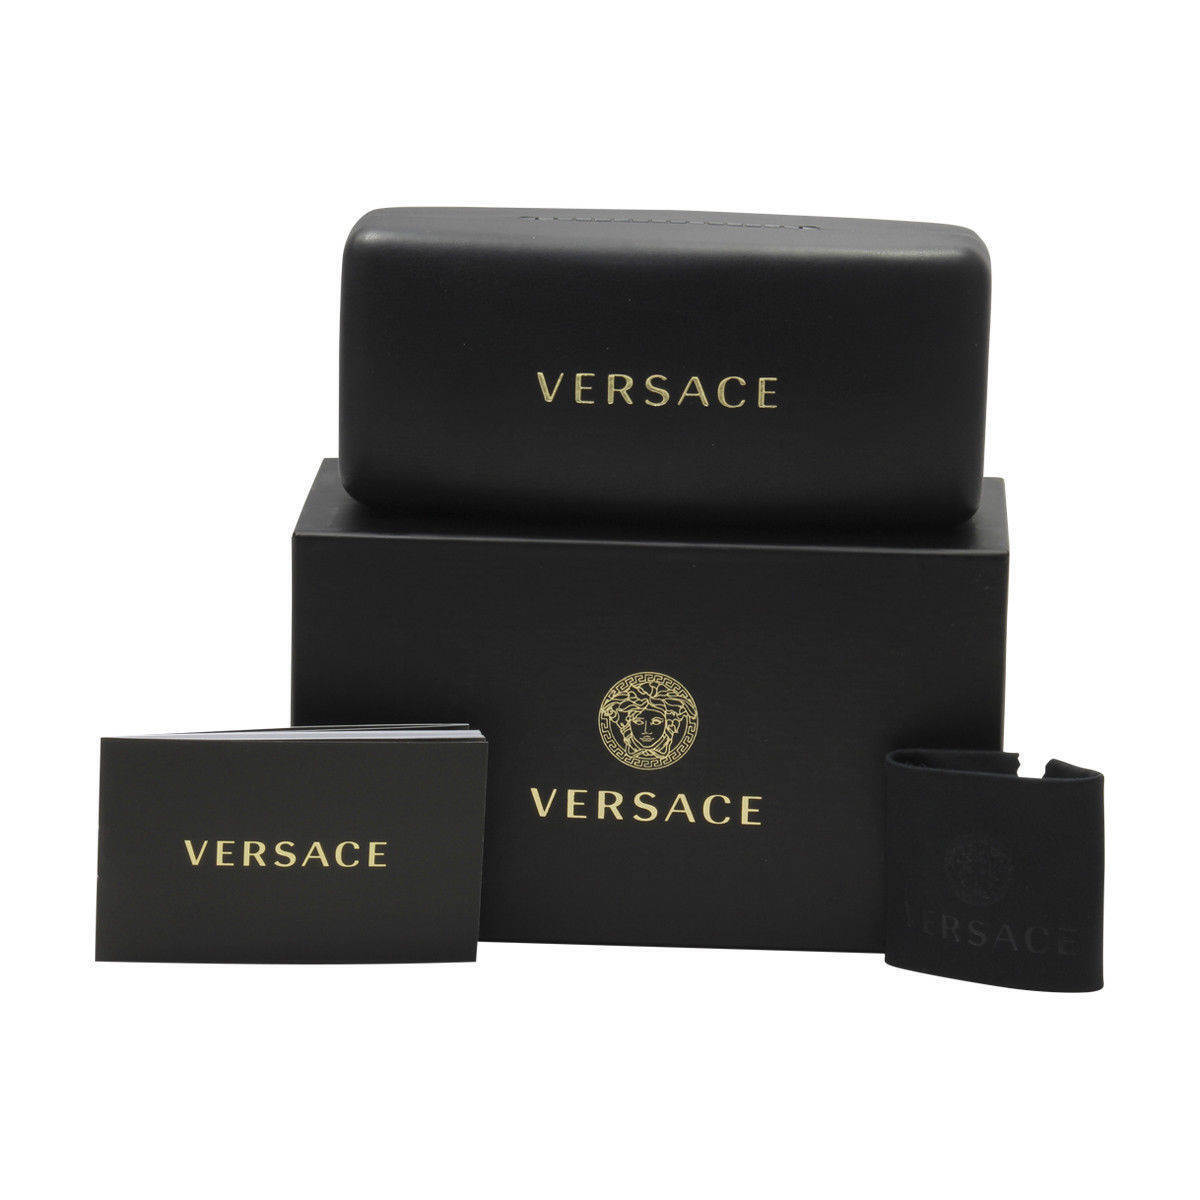 Versace VE3328-5390-54  New Eyeglasses